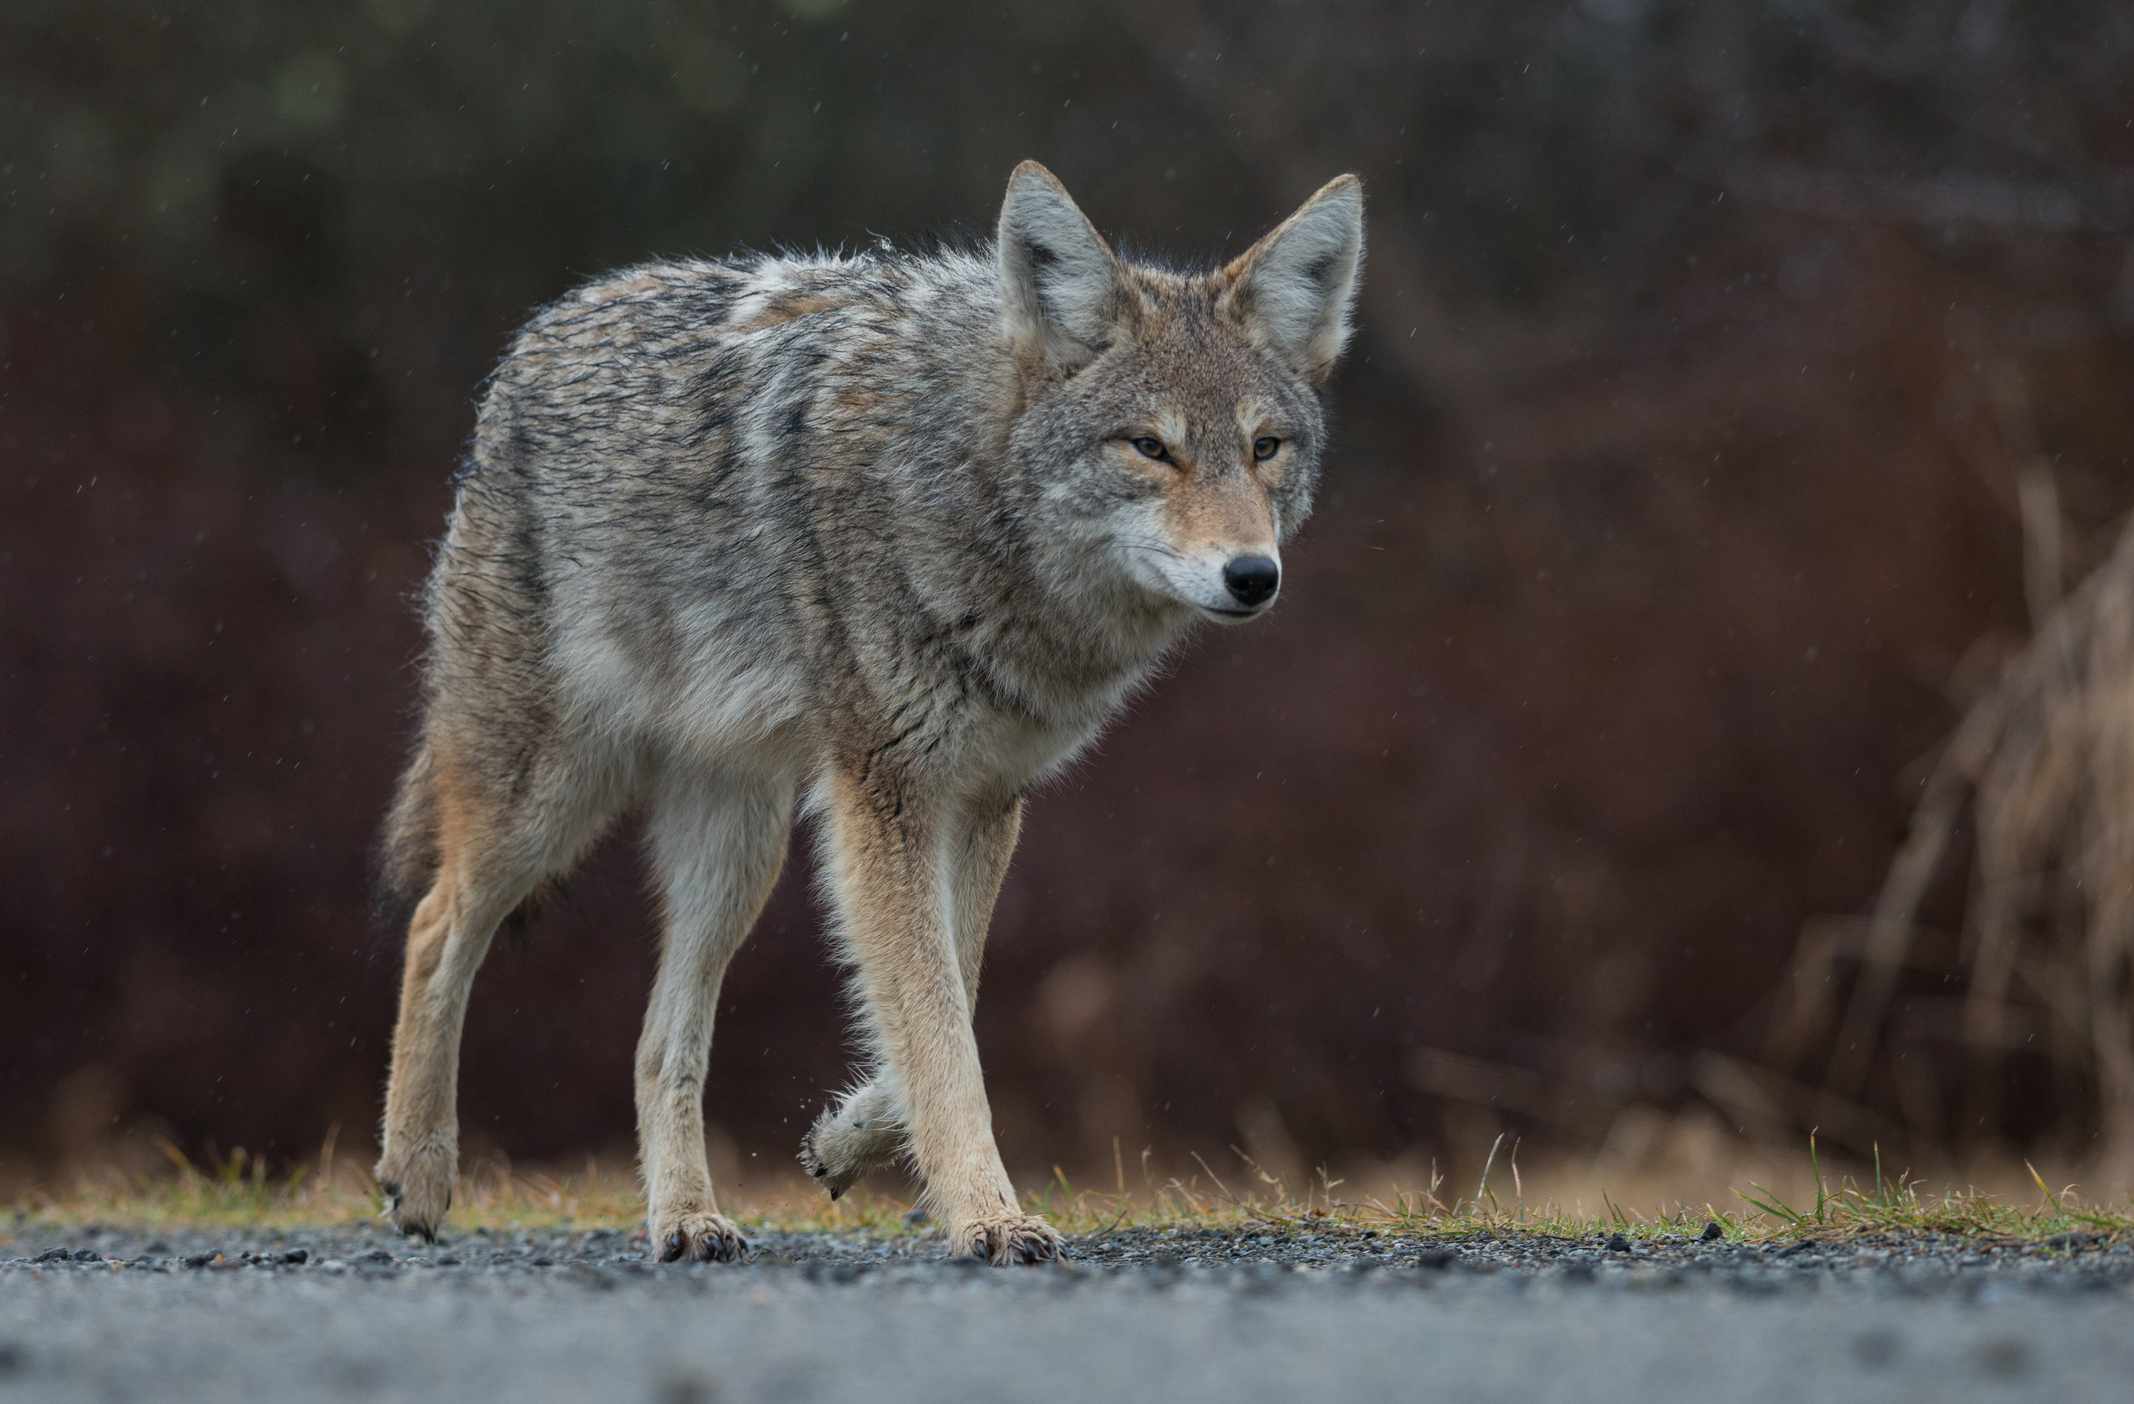 coyote gris y moreno camina por un sendero de grava al atardecer